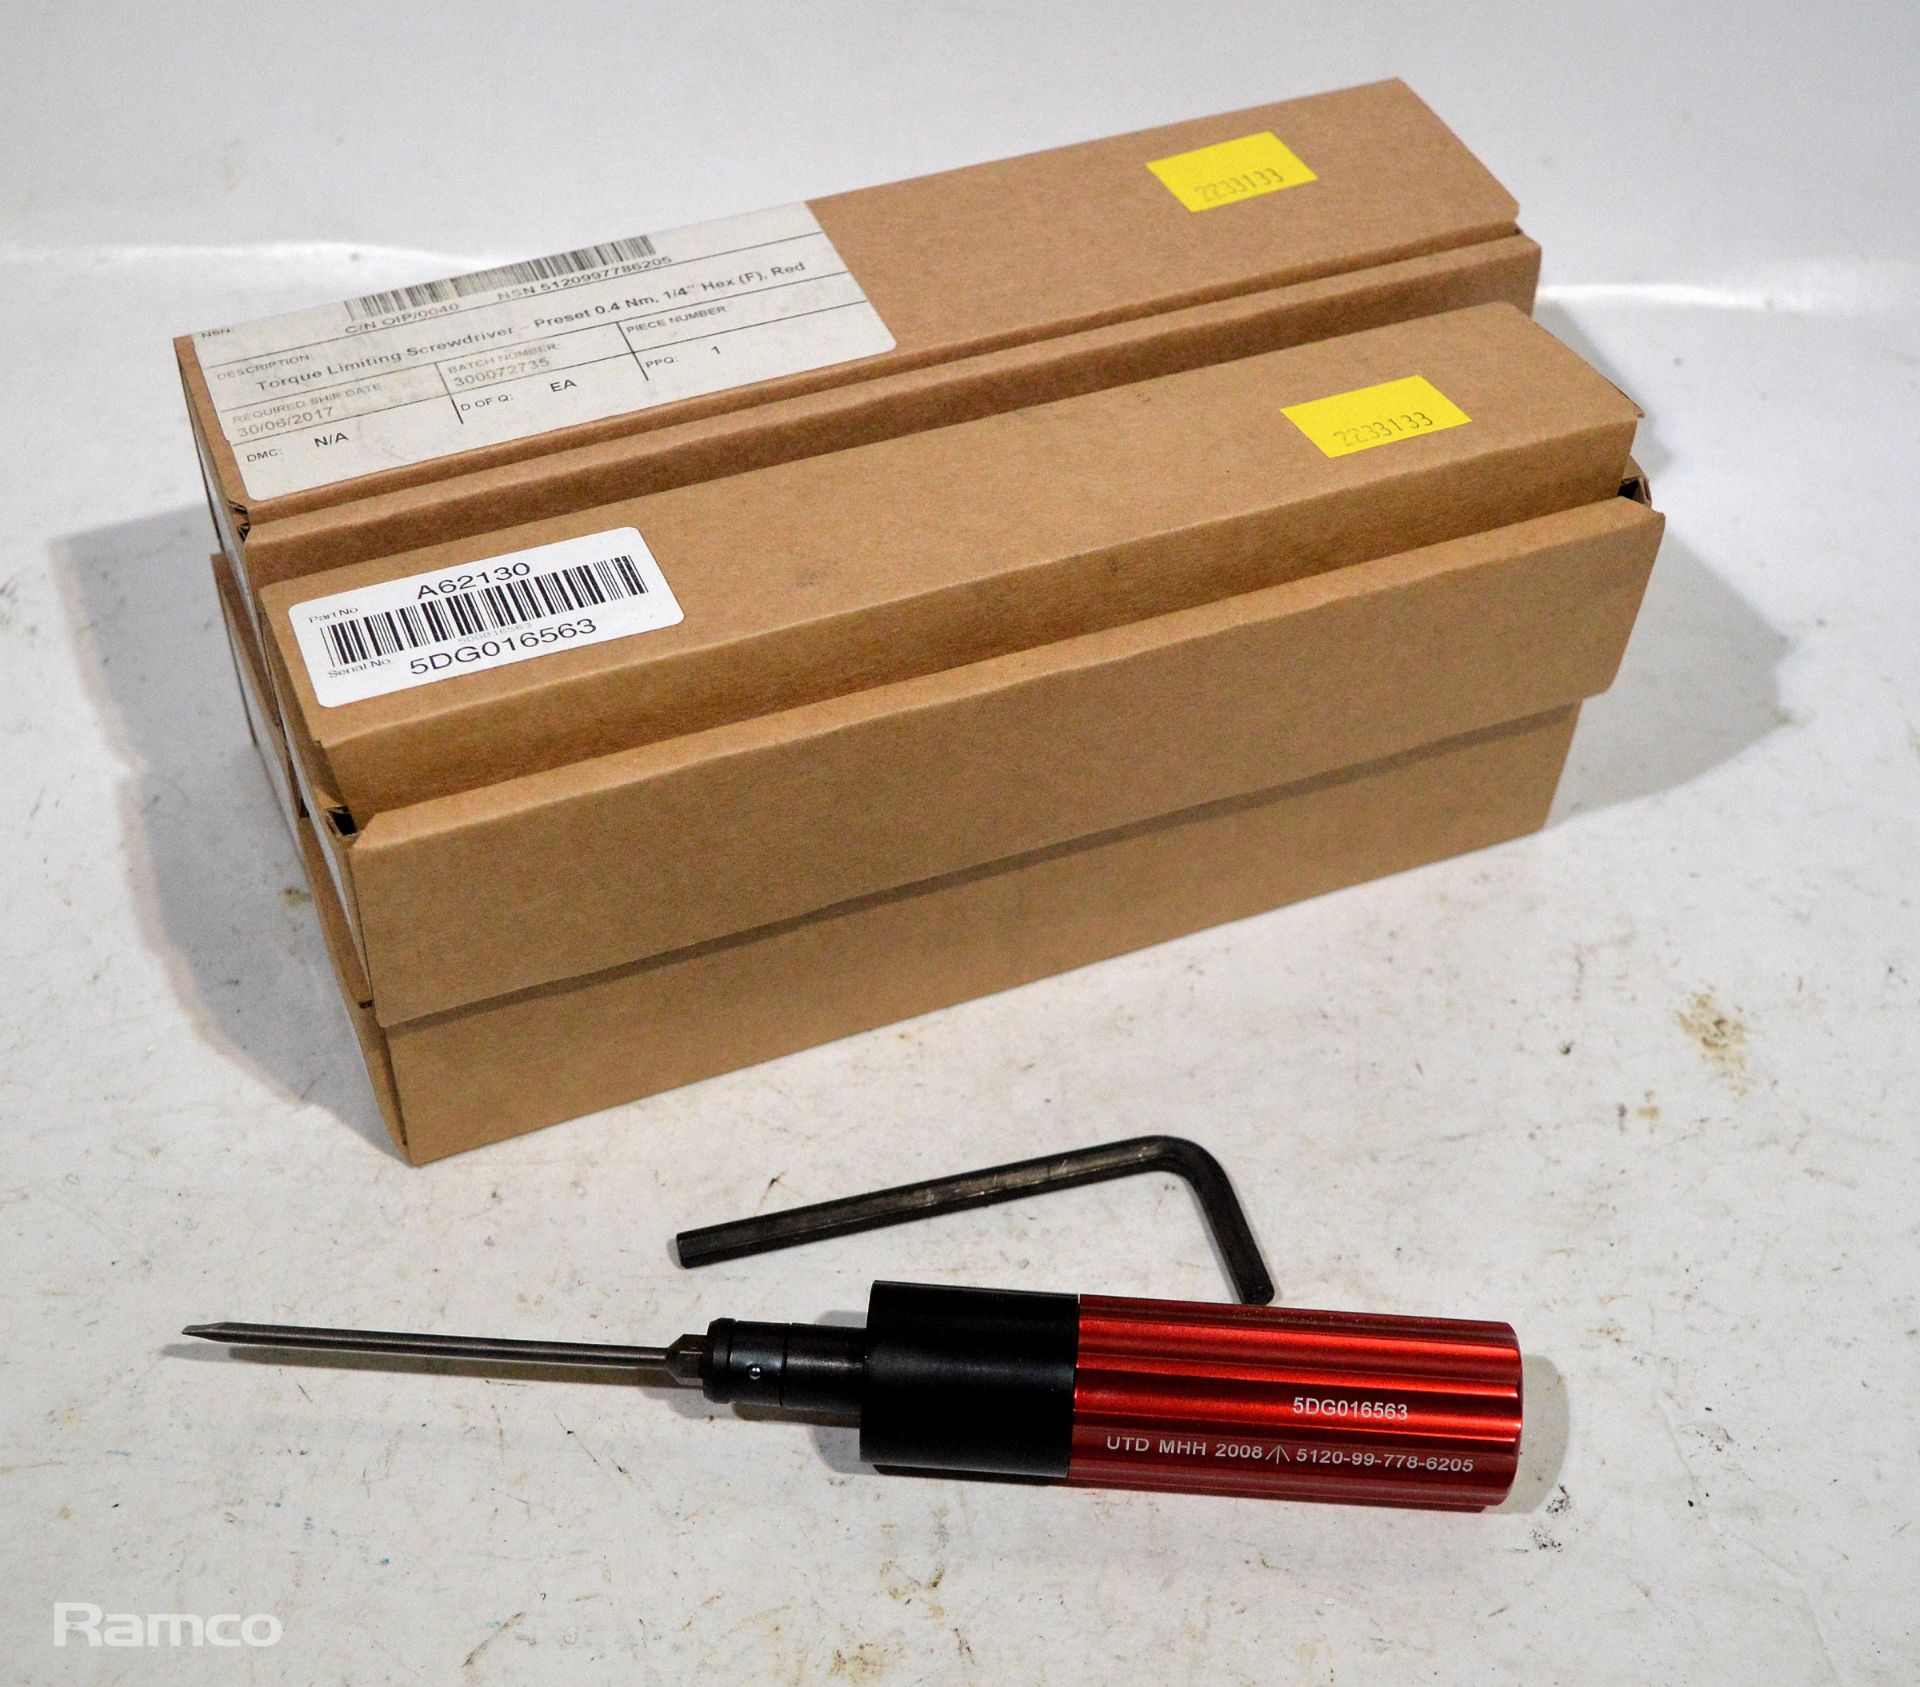 4x torque limiting screwdriver units